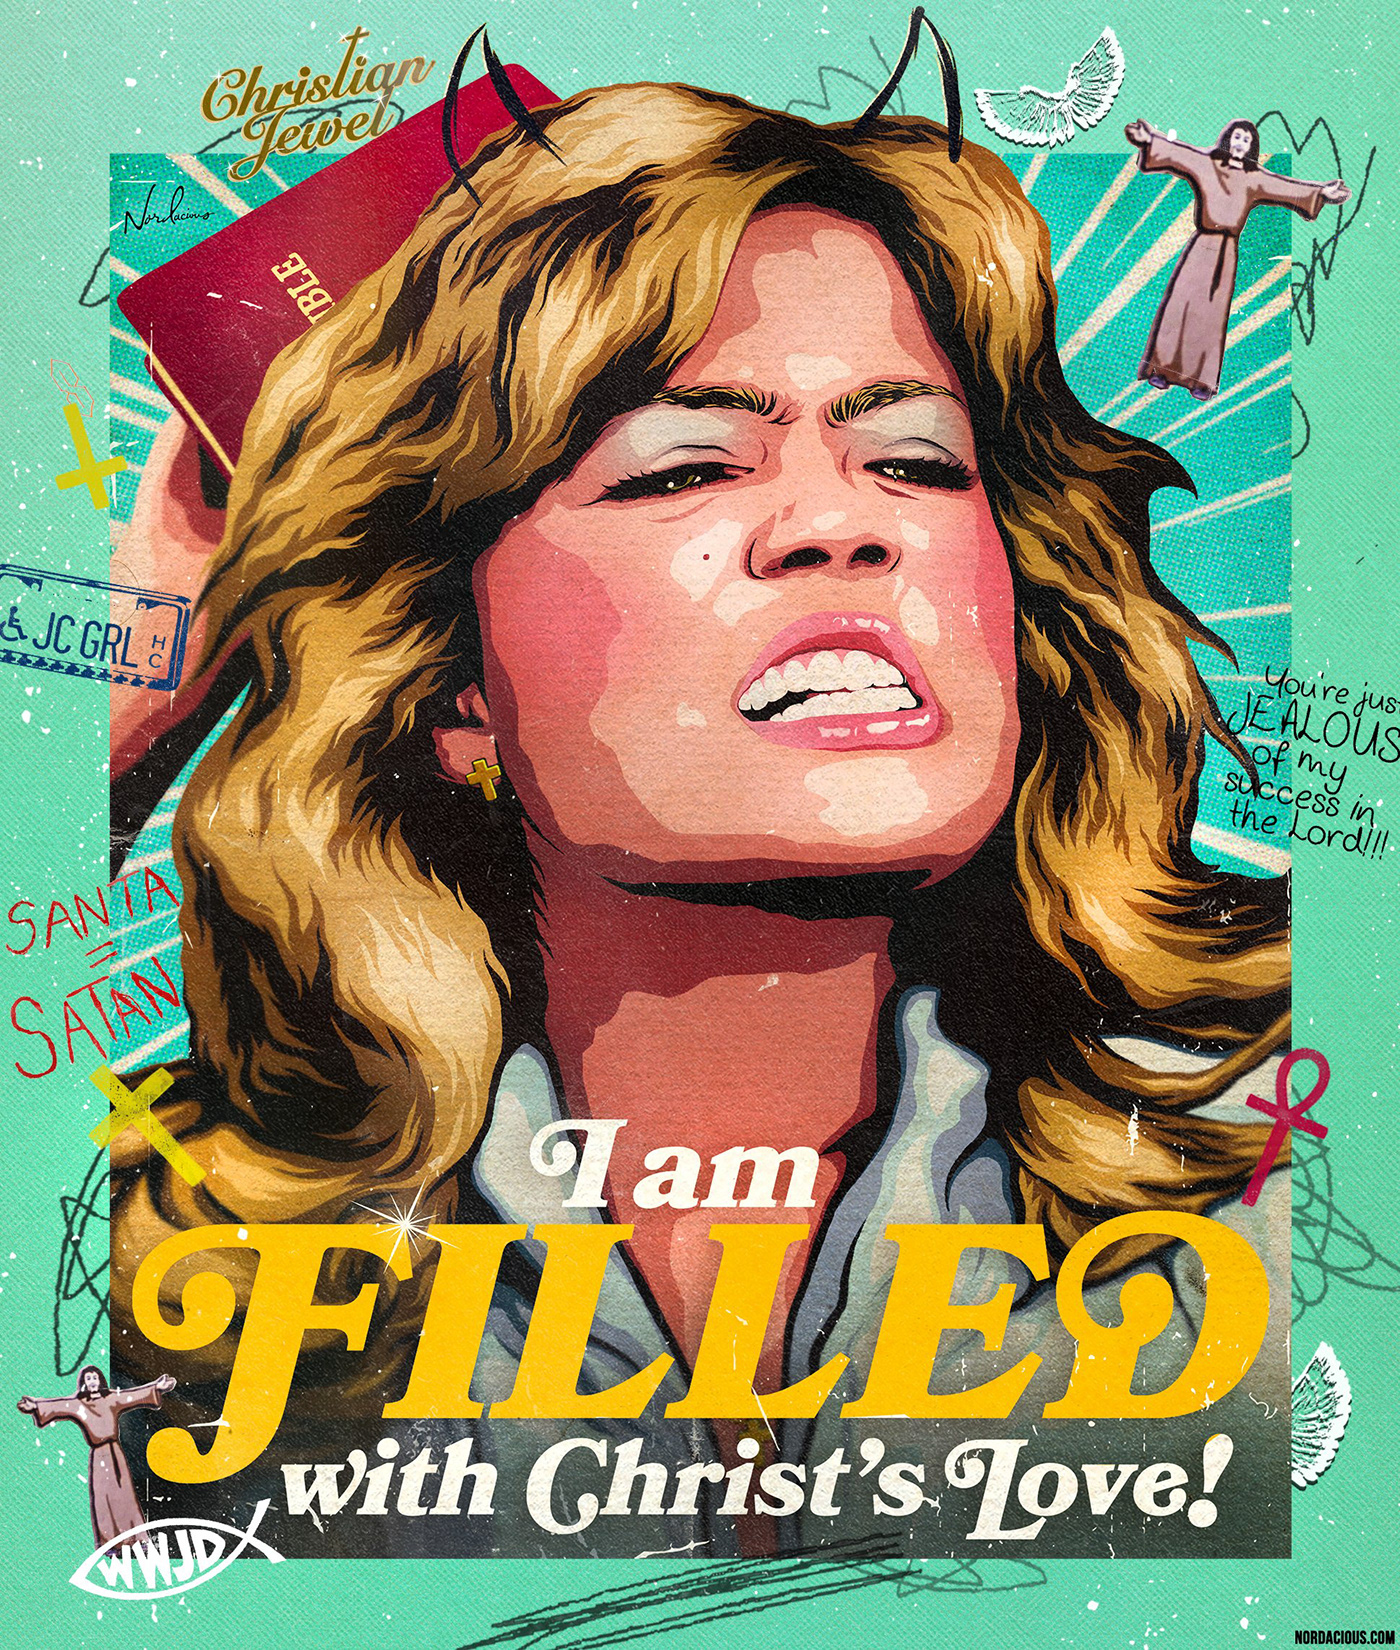 movie poster Christianity satire jesus evangelical LGBT pride Mandy Moore